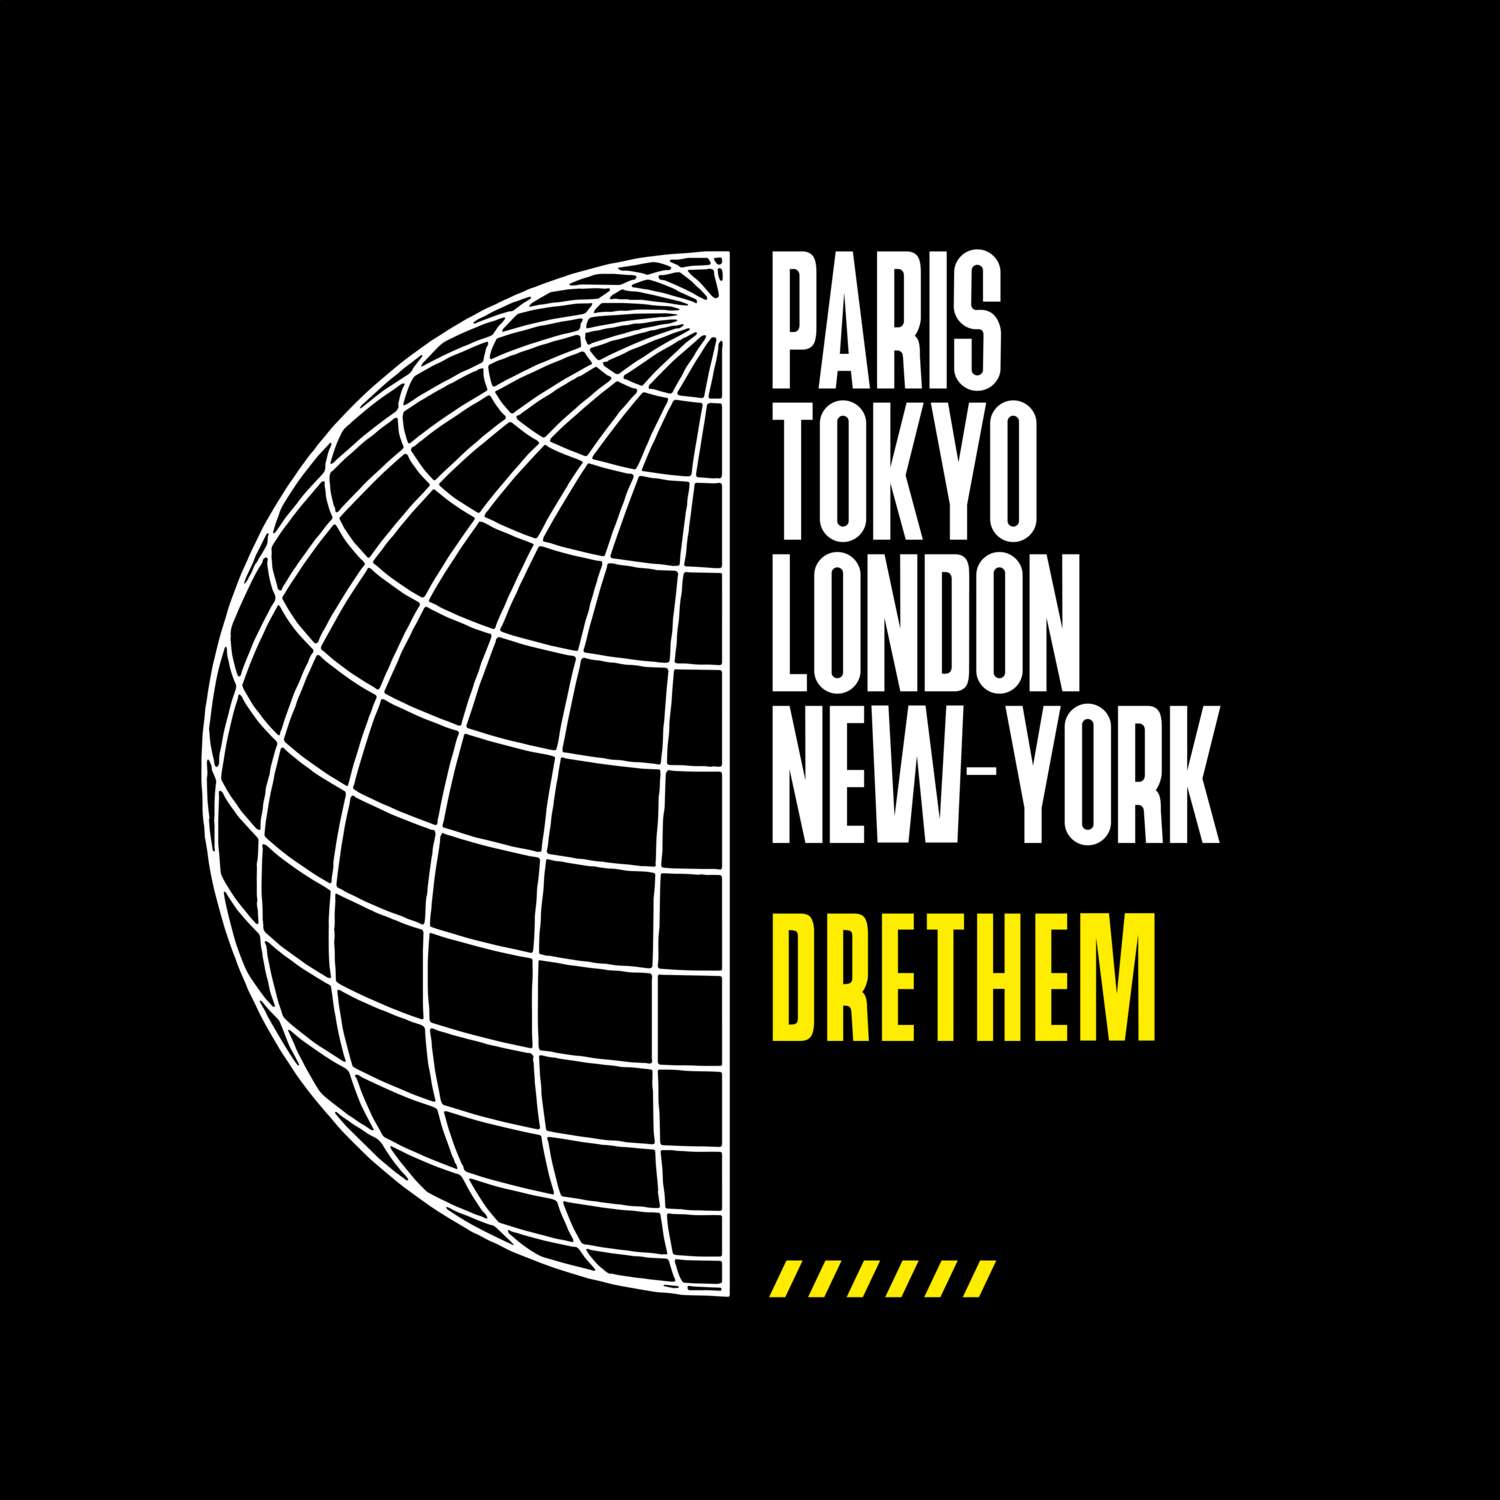 Drethem T-Shirt »Paris Tokyo London«